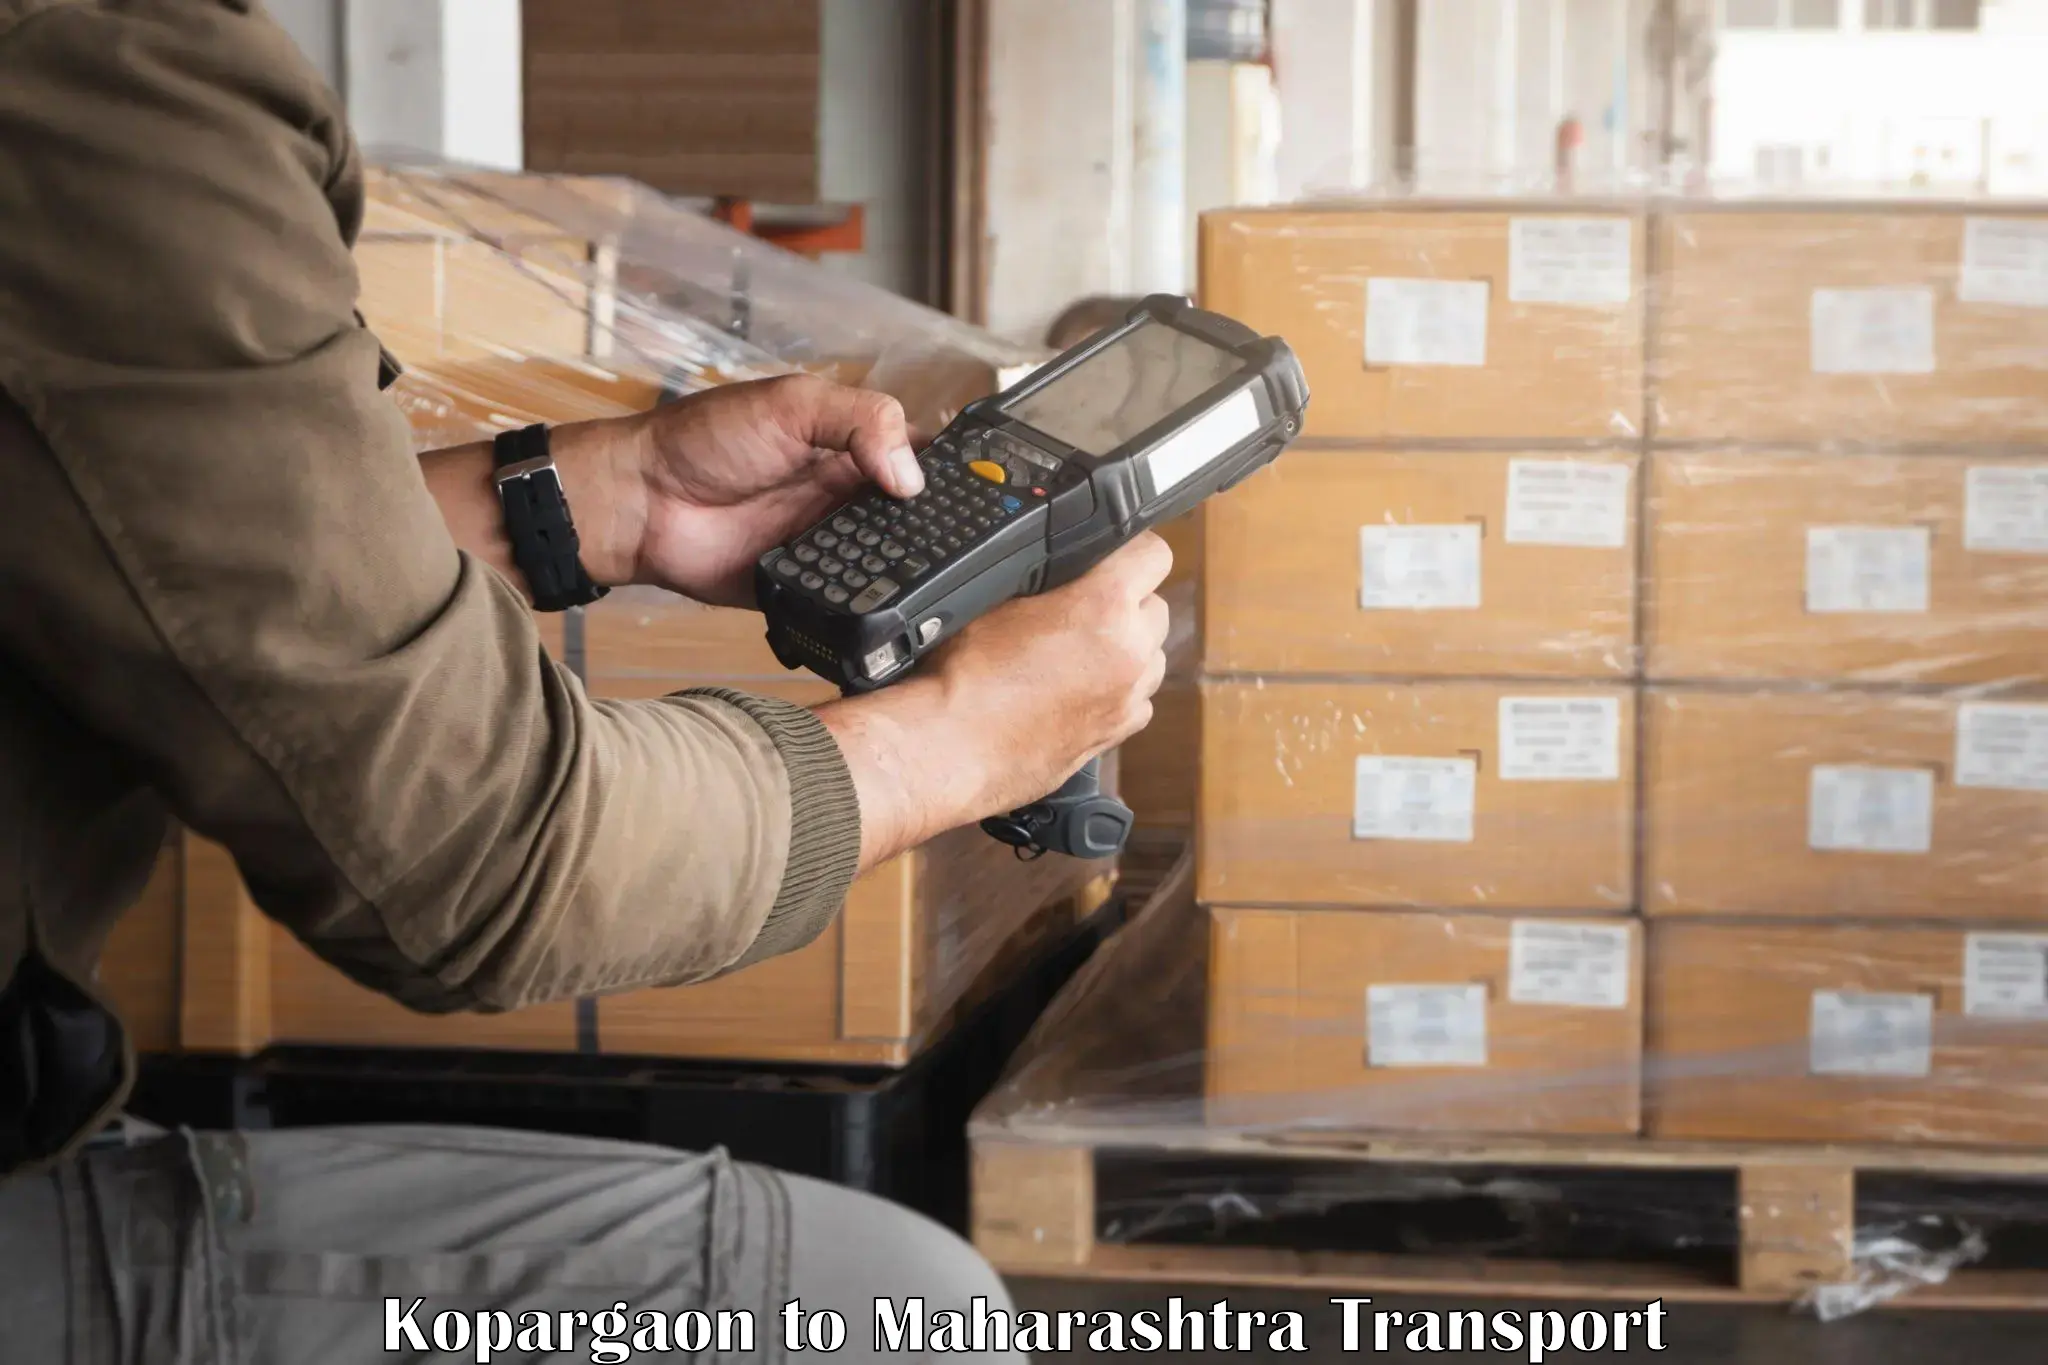 Vehicle courier services Kopargaon to Aurangabad